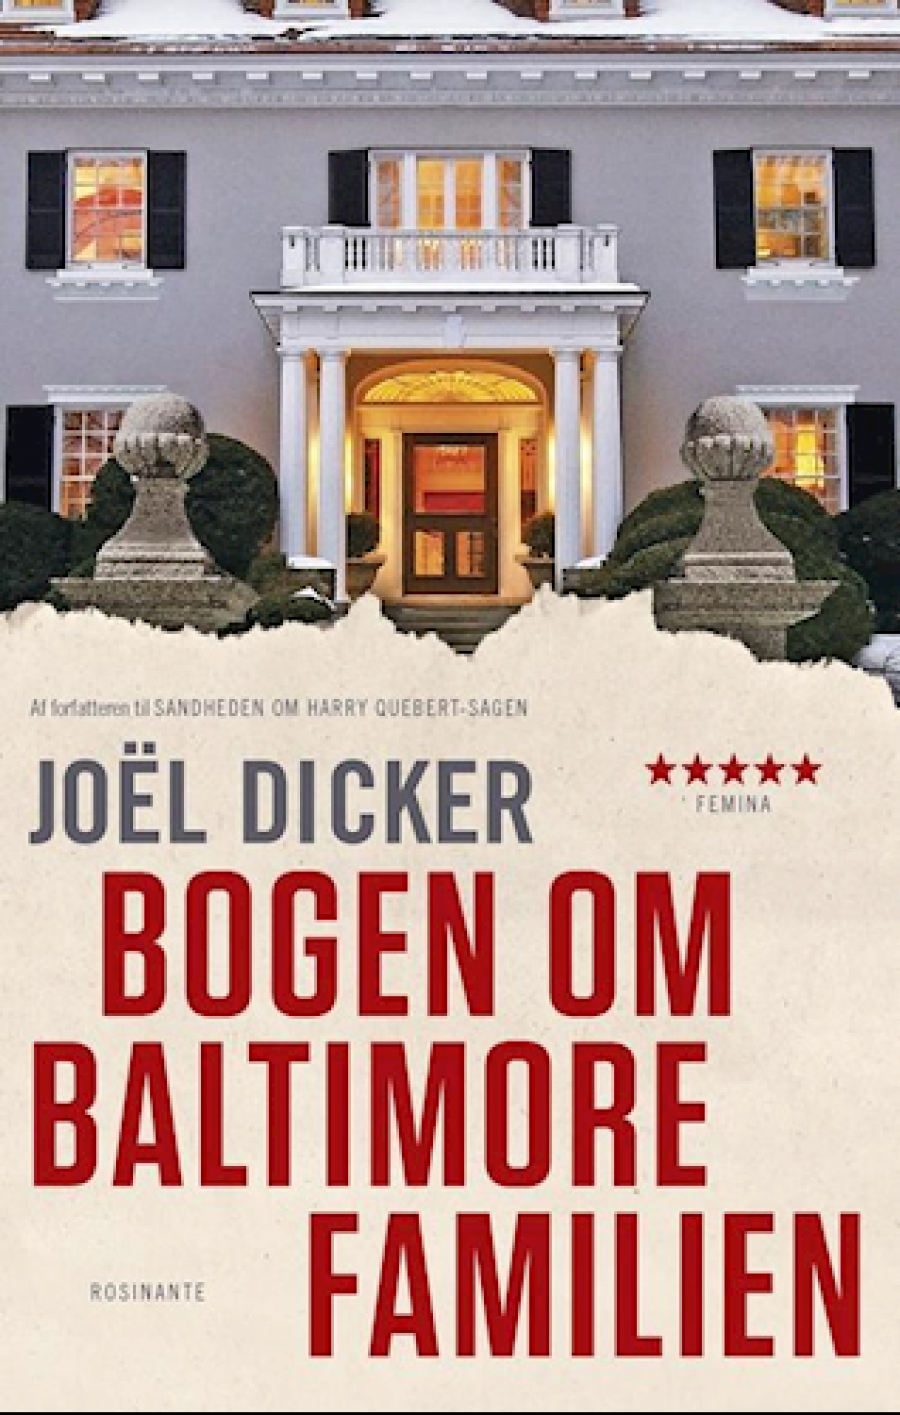 Forsiden på "Bogen om Baltimore familien" af Joël Dicker 